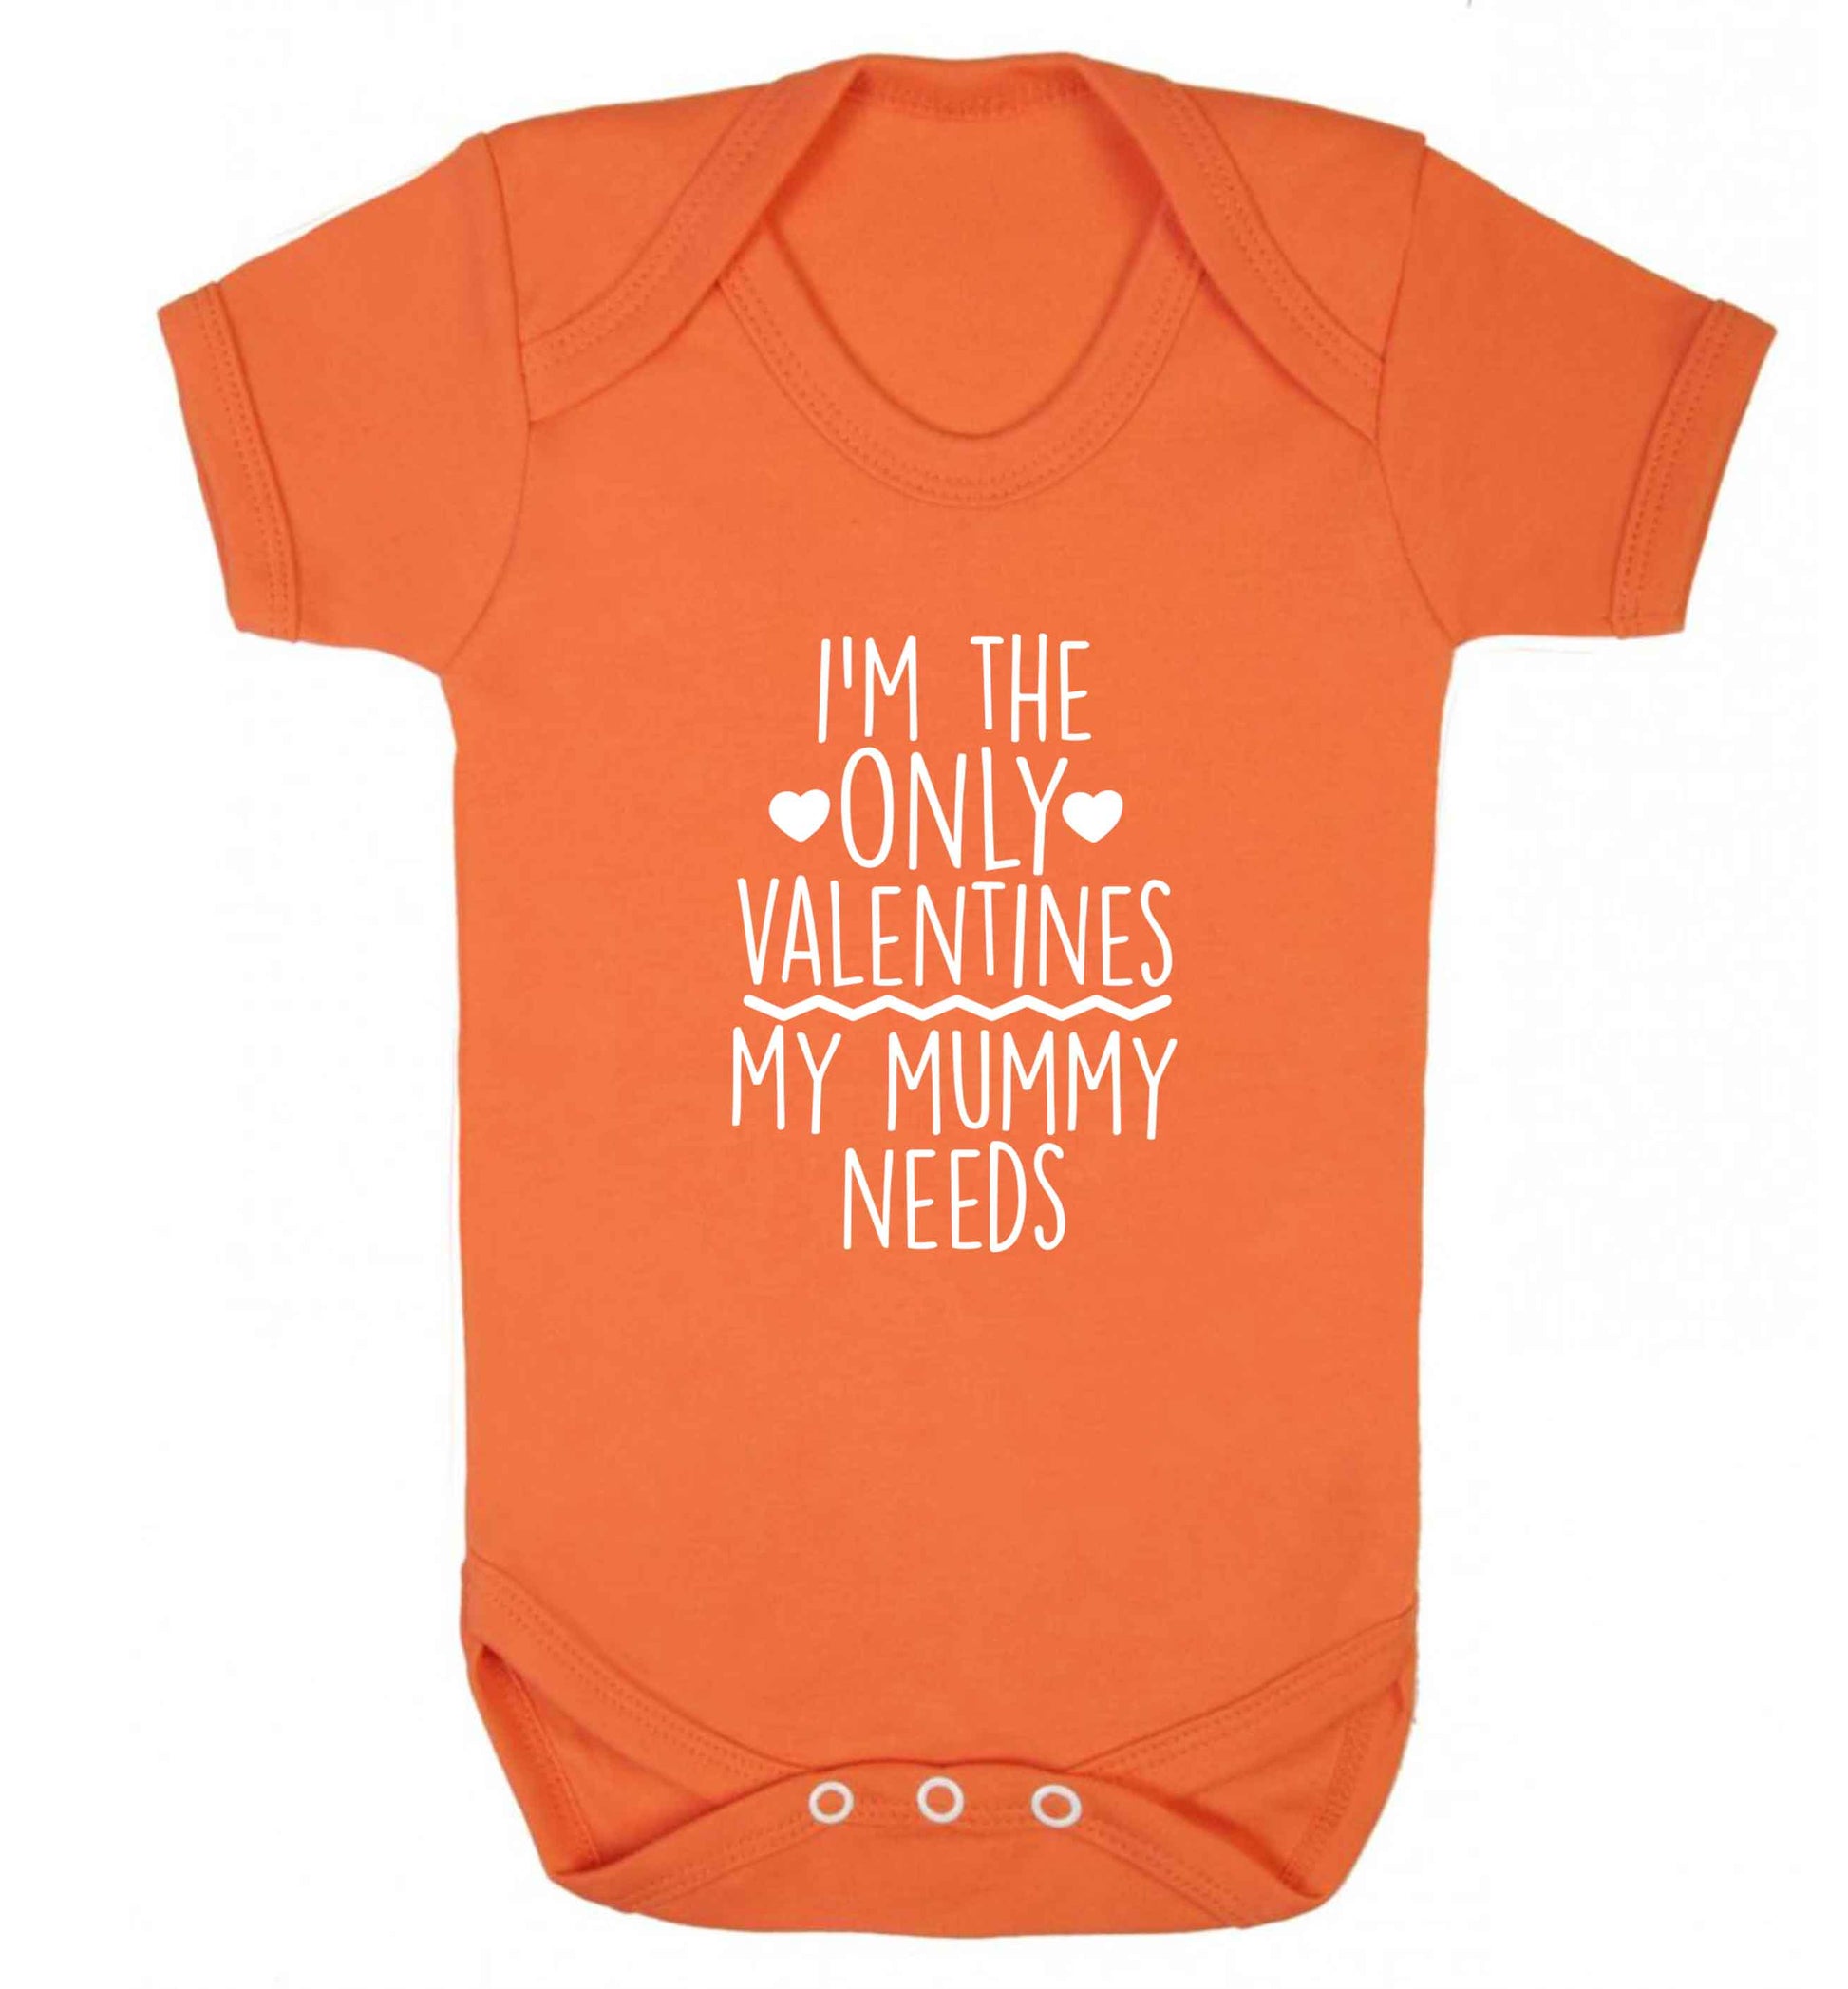 I'm the only valentines my mummy needs baby vest orange 18-24 months